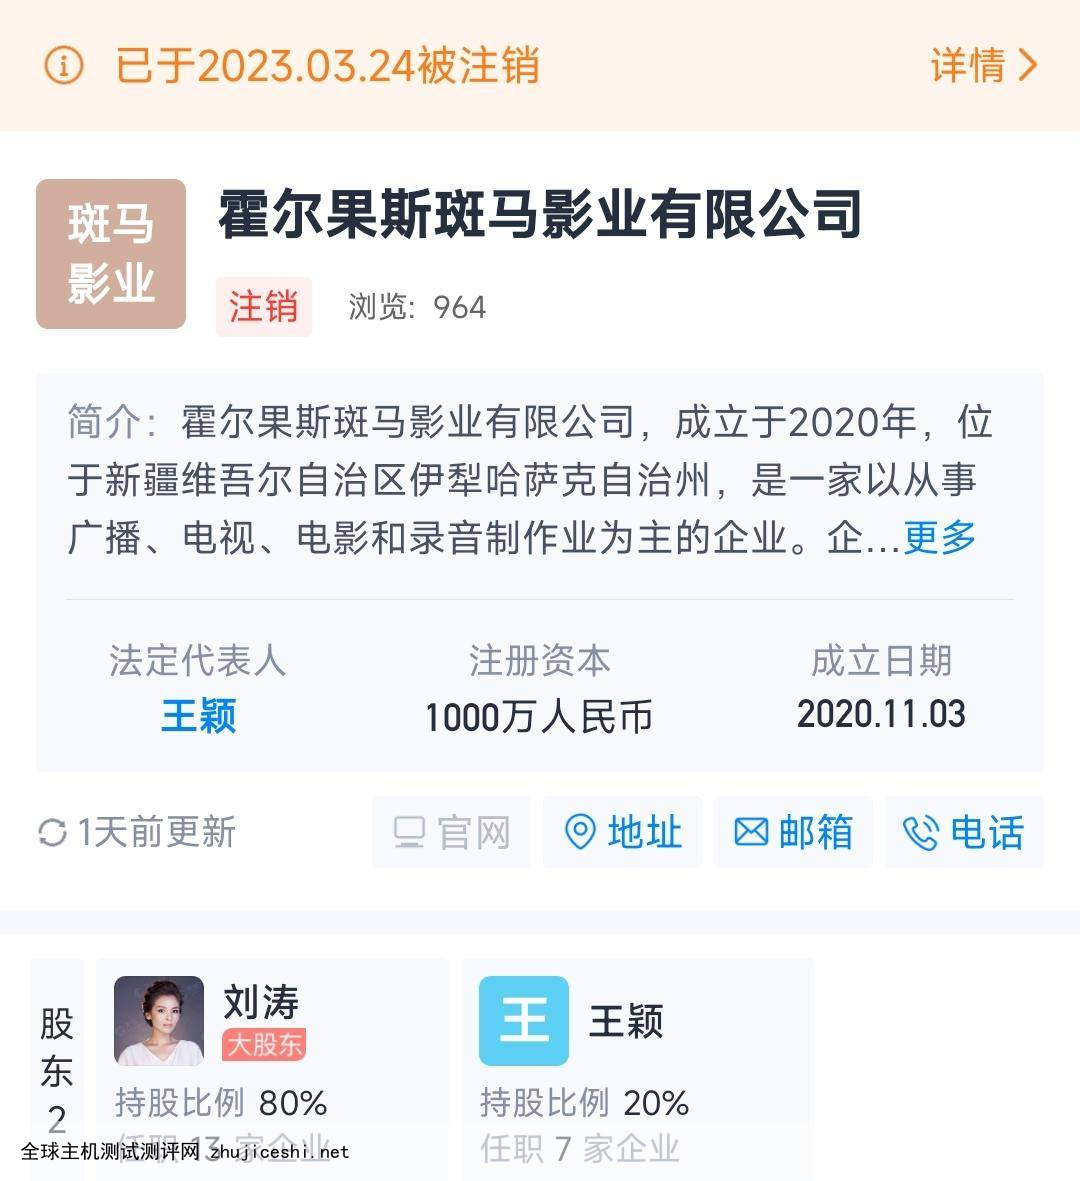 刘涛持股80%的直播业务公司被注销，明星直播带货的春天要过去了吗？